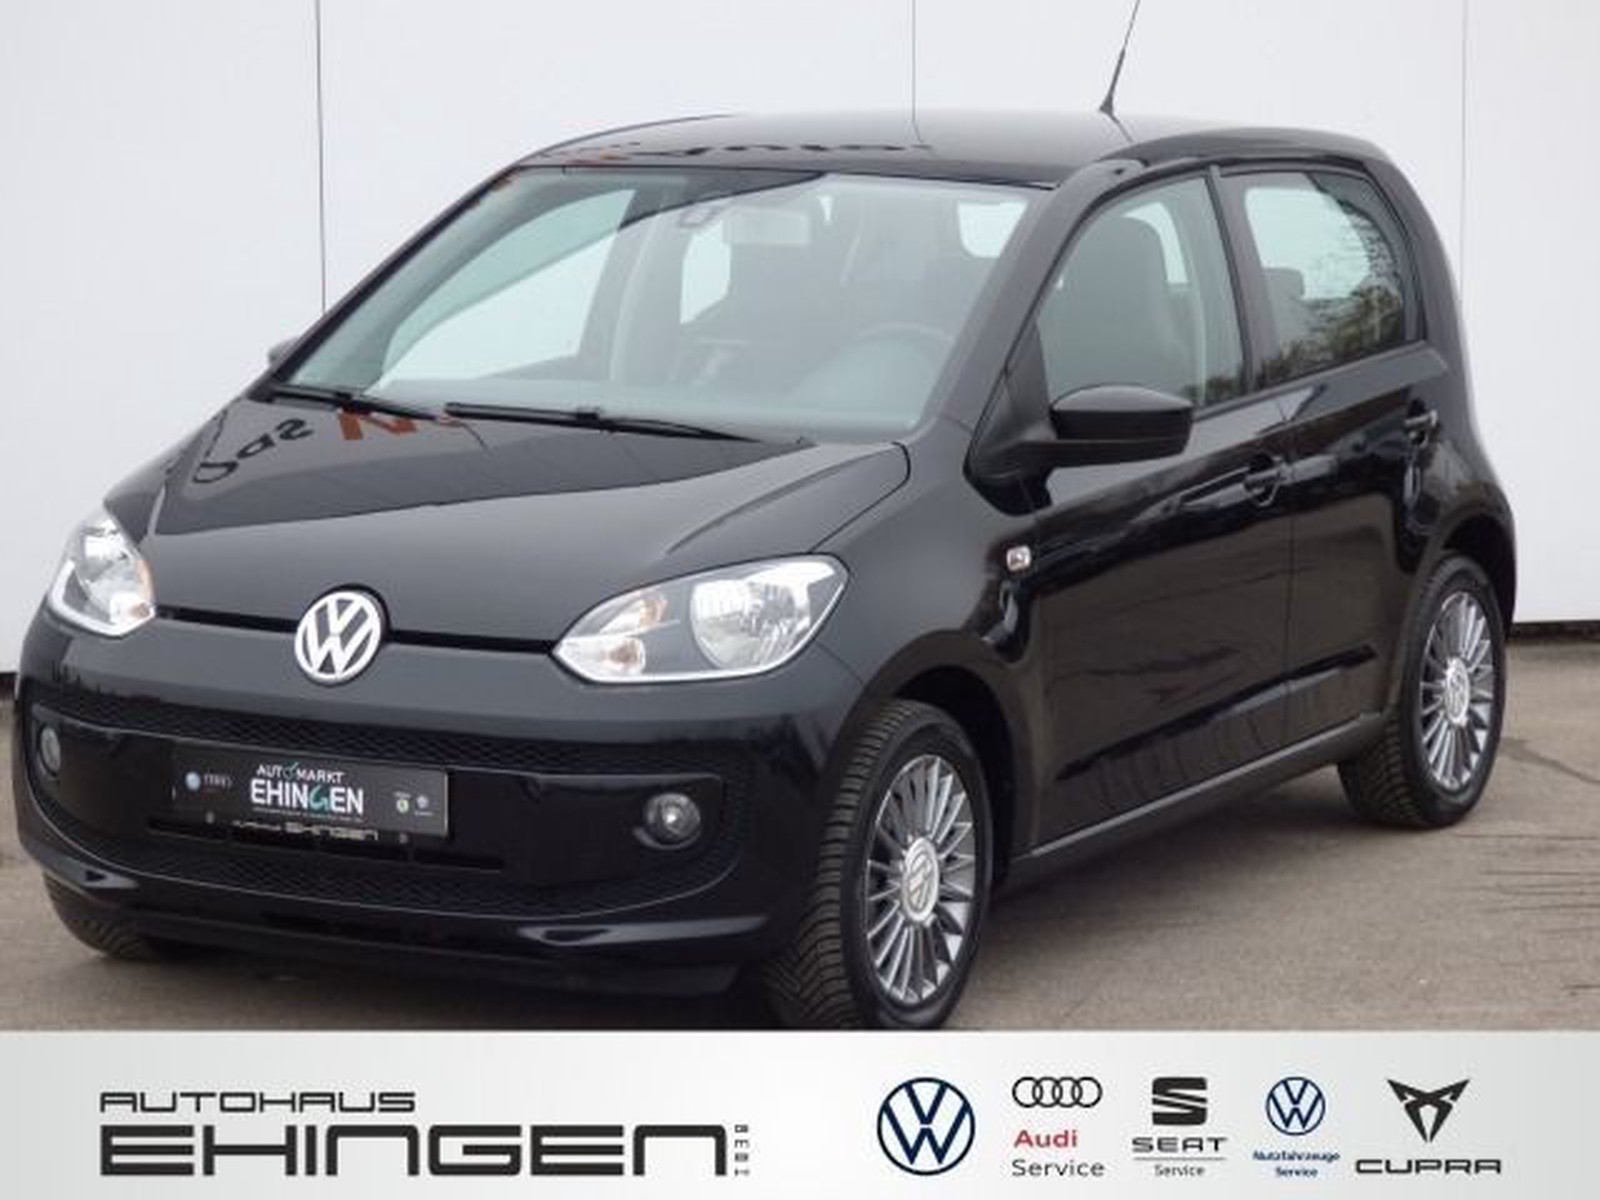 Volkswagen up! 1.0 high up Automatik ASG Alu Klima PDC Navi gebraucht kaufen  in Ehingen Preis 8666 eur - Int.Nr.: 04541 VERKAUFT